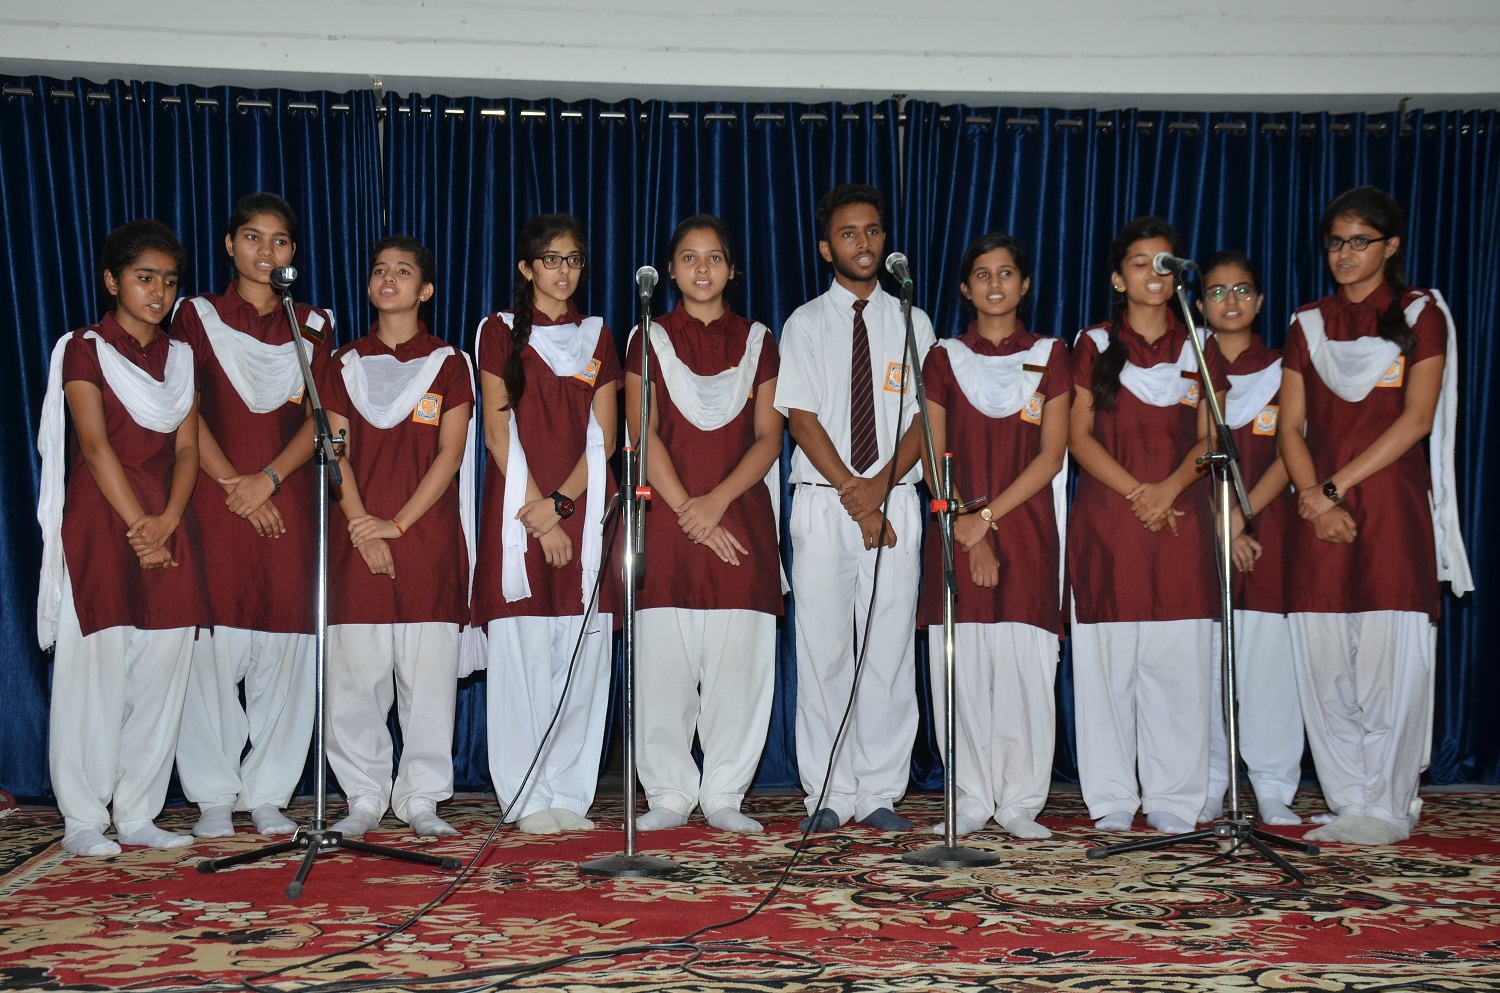 Inter School Music Competition held at Sanskar School